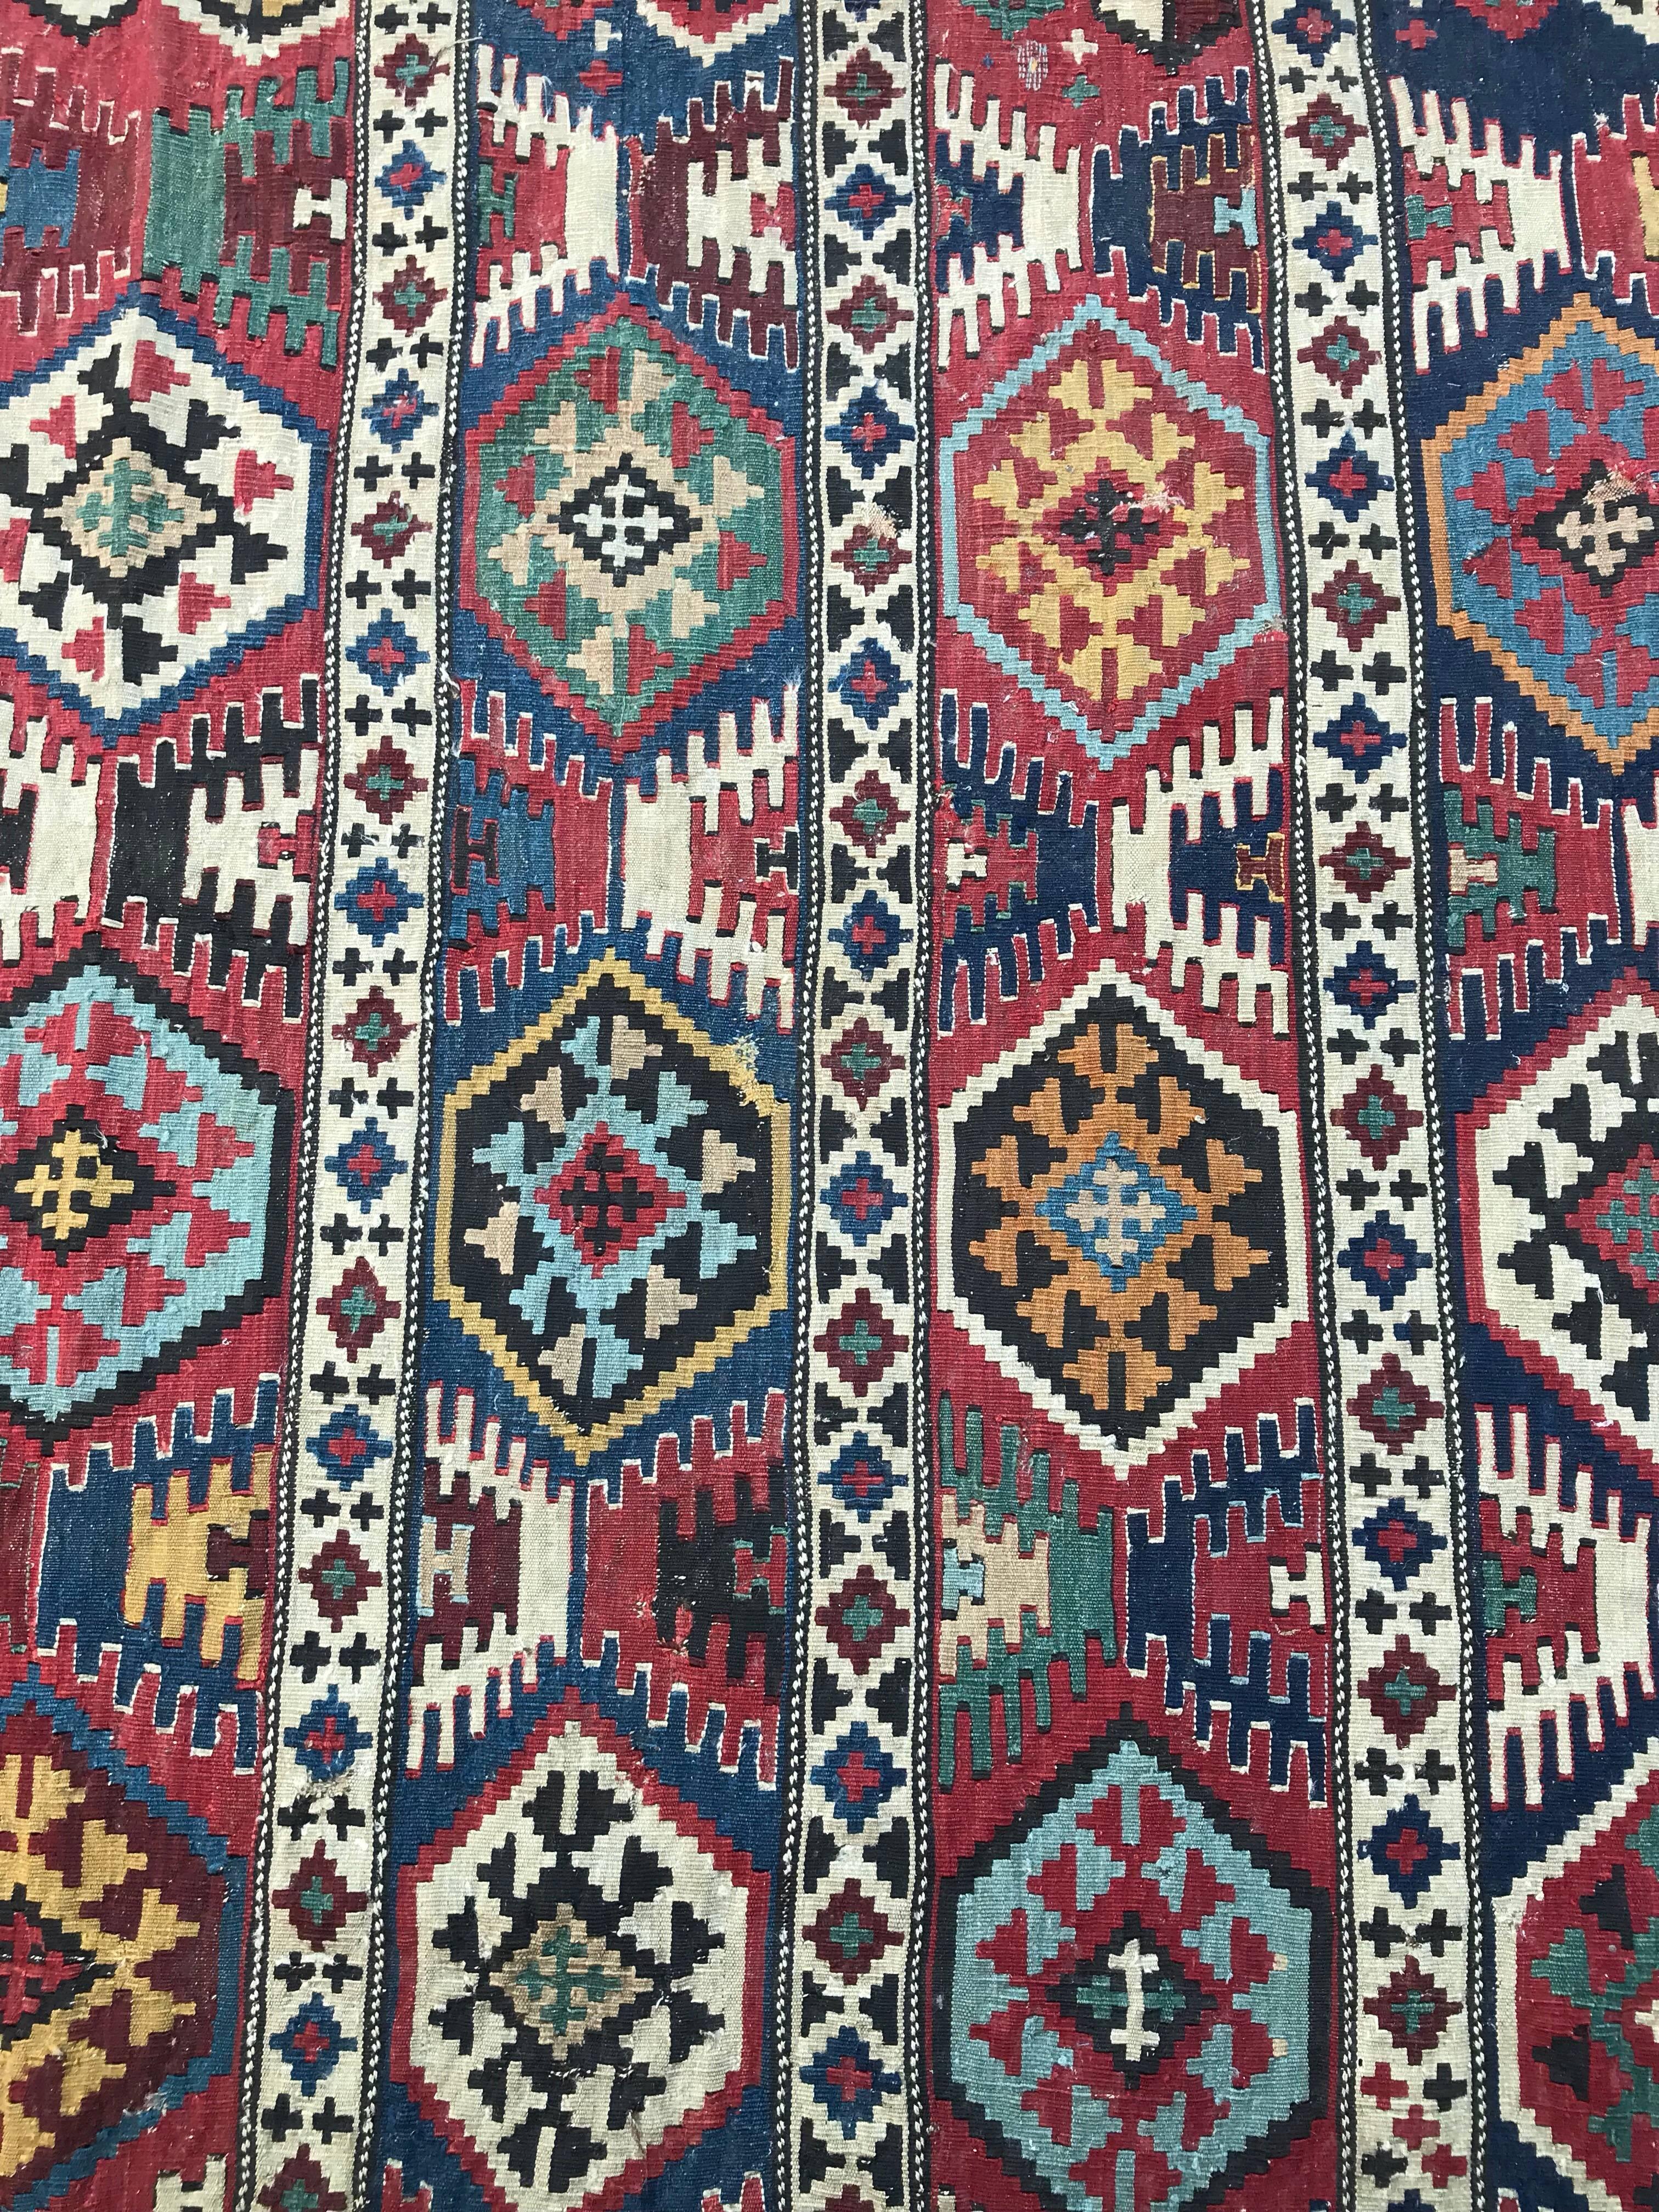 Très beau Kilim ancien du Caucase avec de belles couleurs naturelles avec du bleu vert, orange et rouge, et un design tribal géométrique. Une pièce de collection, entièrement tissée à la main avec de la laine sur fond de laine.

✨✨✨
